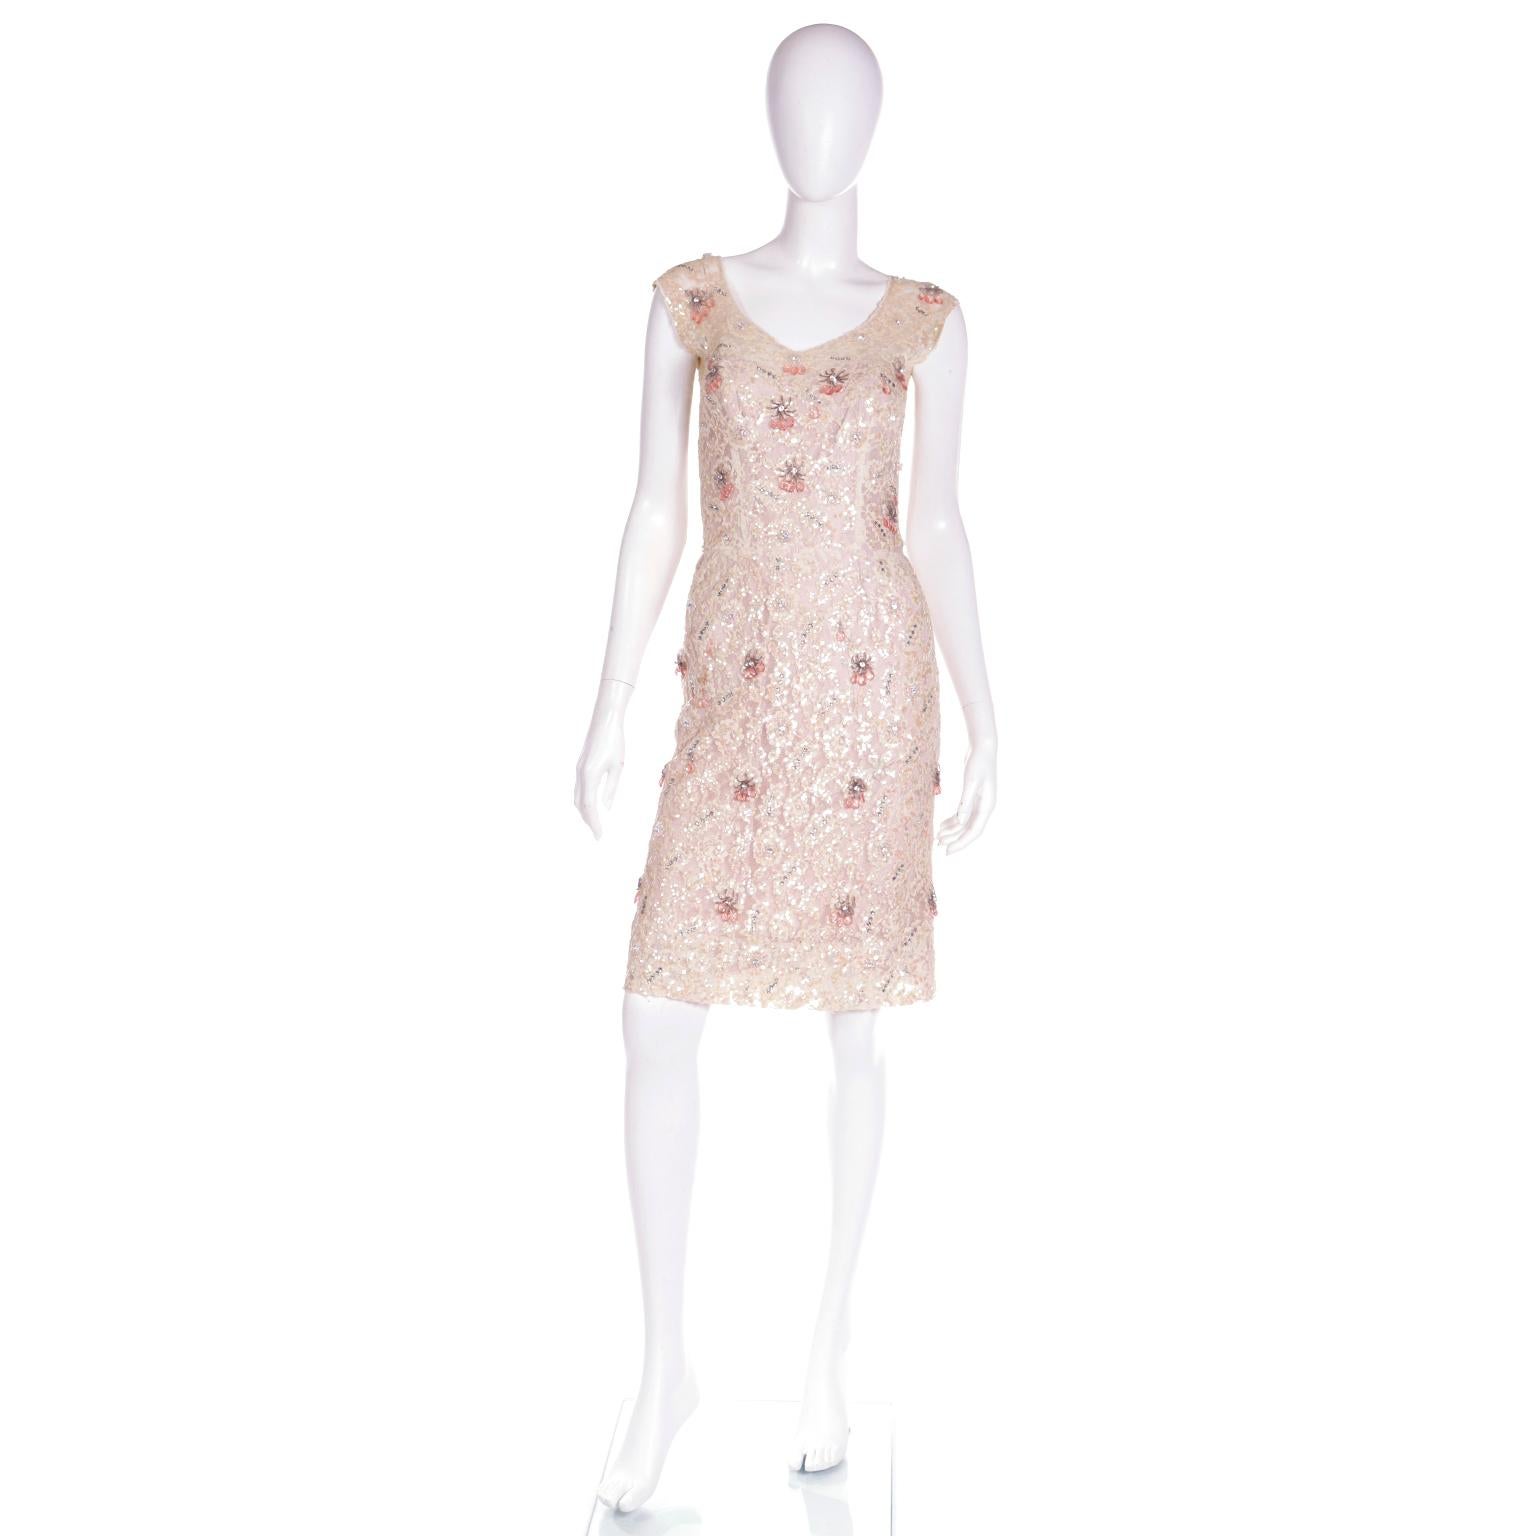 Dies ist eine atemberaubende späten 1950er Jahren Karen Stark für Harvey Berin Wiggle Kleid mit einem rosa Satin-Futter unter einem Spitzen-Overlay. Die cremefarbene Spitze ist mit Strasssteinen und schillernden Pailletten in einem ähnlichen Farbton